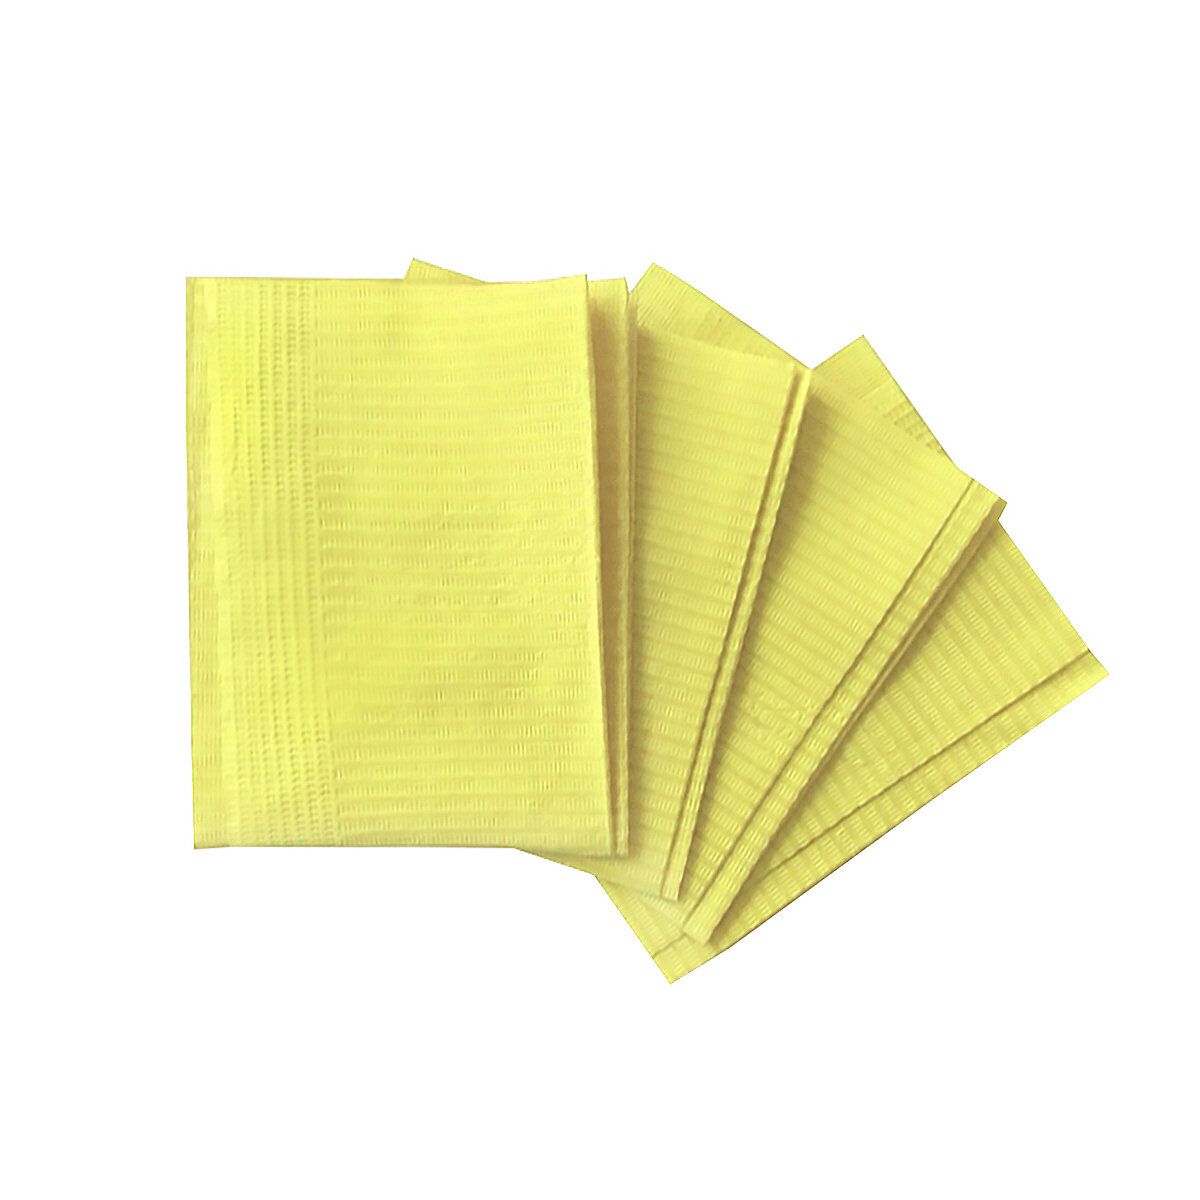 Салфетки ламинированные SMZ Euro Standart 33*45 (бумага + полиэтилен) желтые